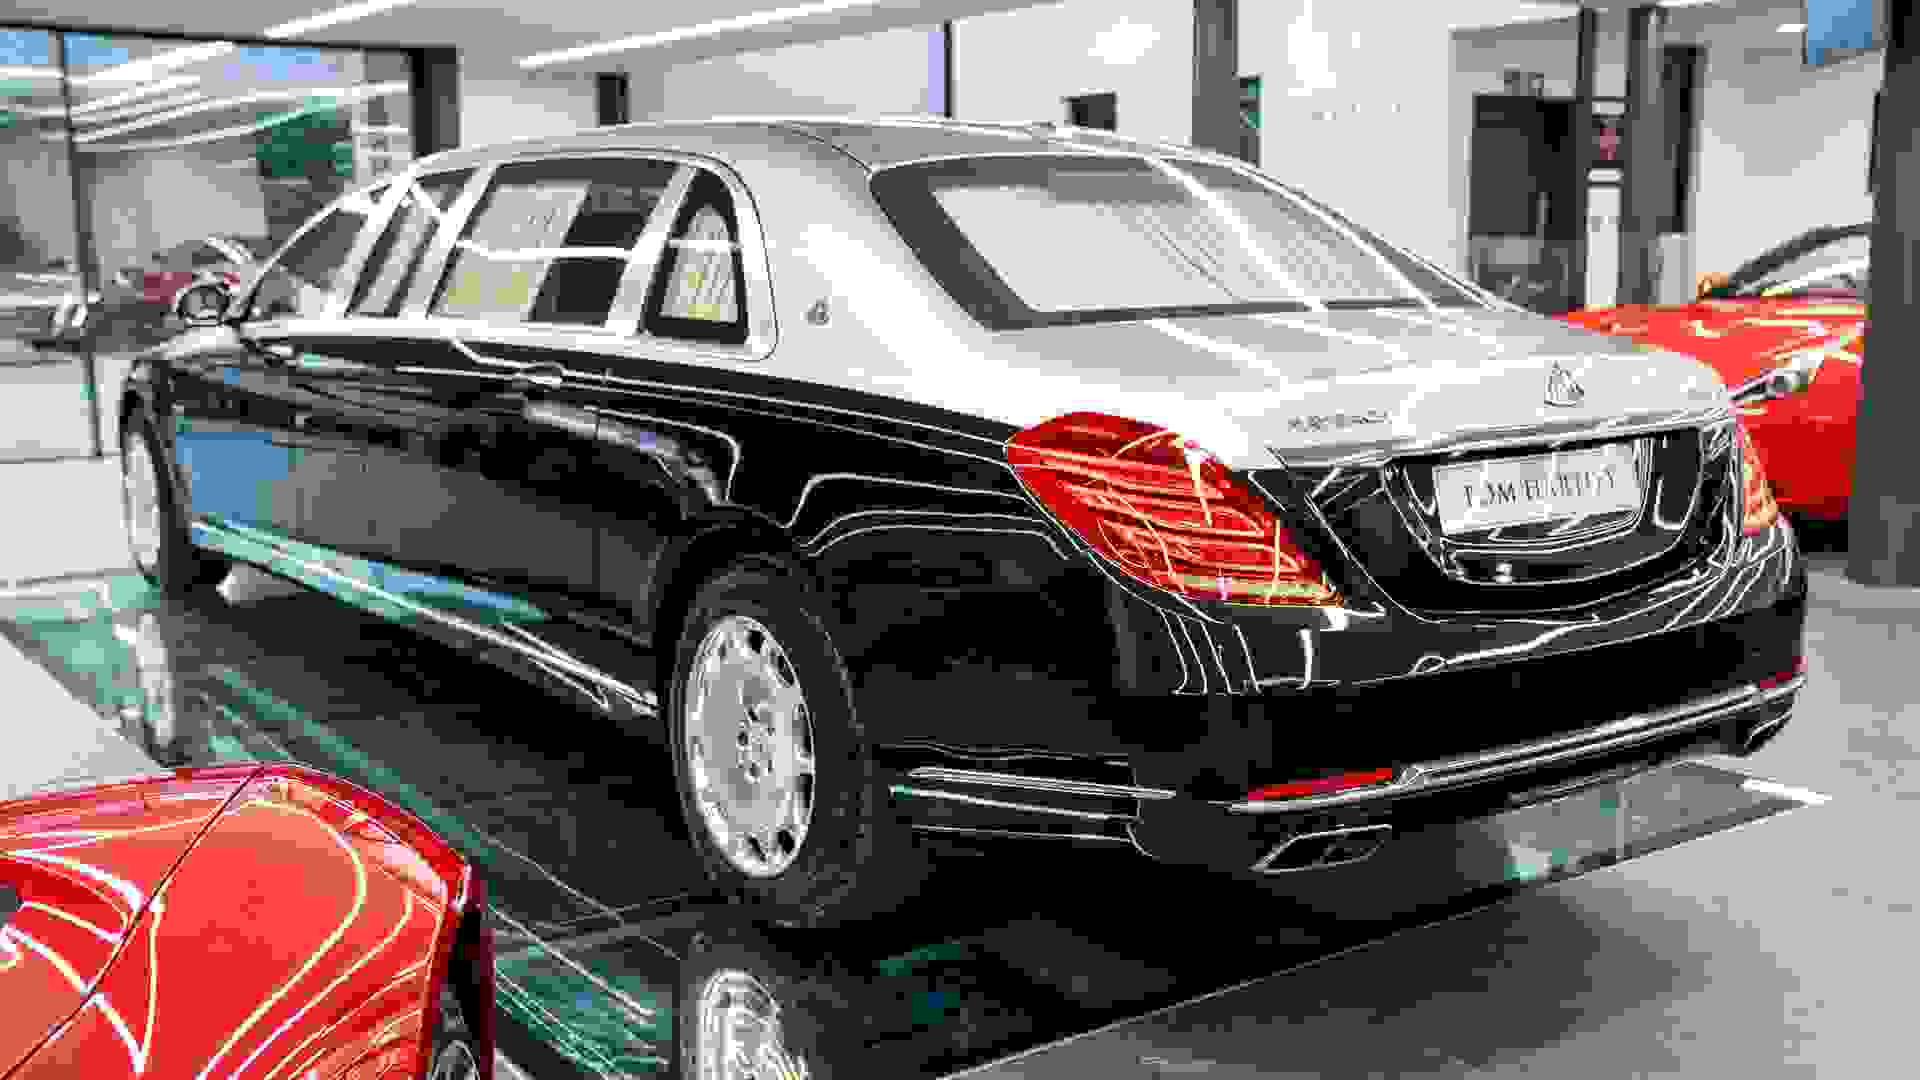 Mercedes-Benz Maybach S600 Photo 8c68576b-8341-4956-9a06-1839c82a705d.jpg